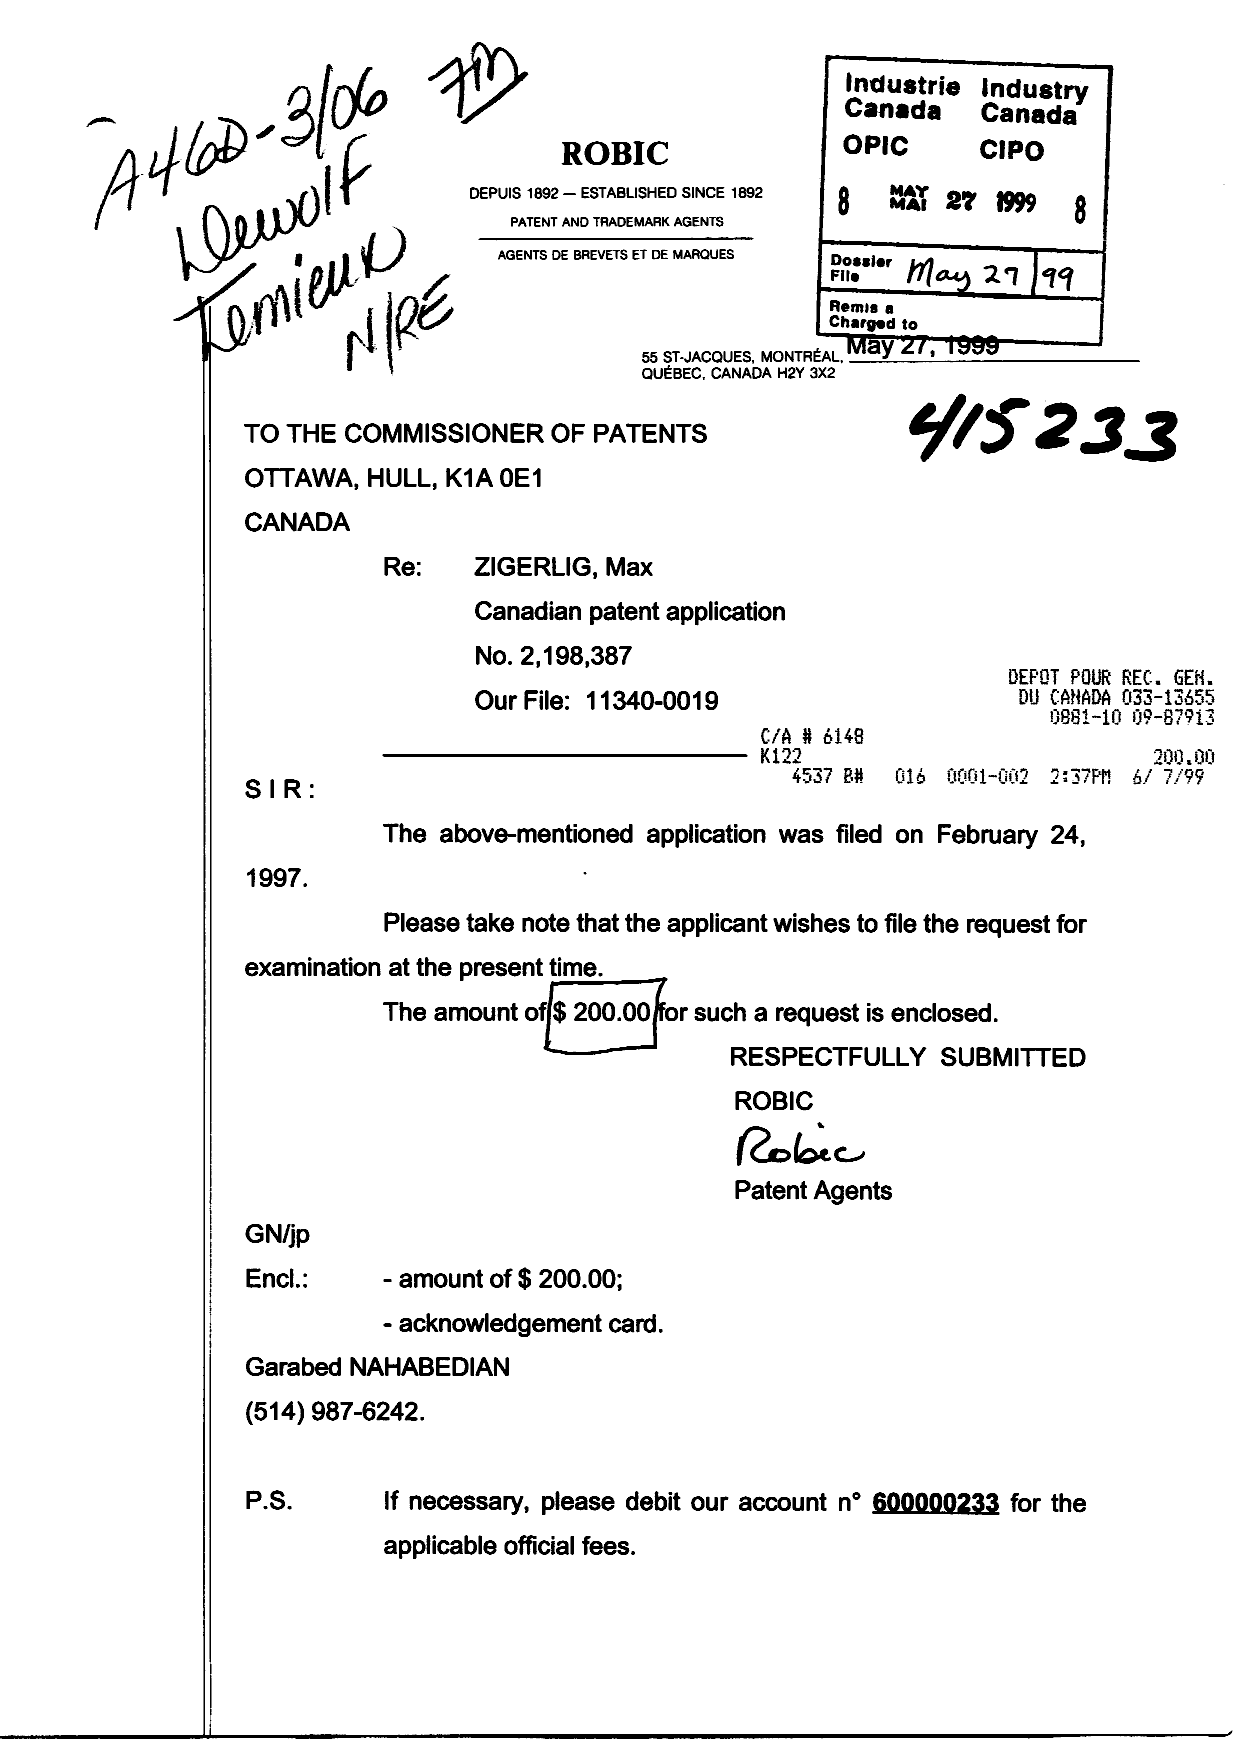 Document de brevet canadien 2198387. Poursuite-Amendment 19990527. Image 1 de 1